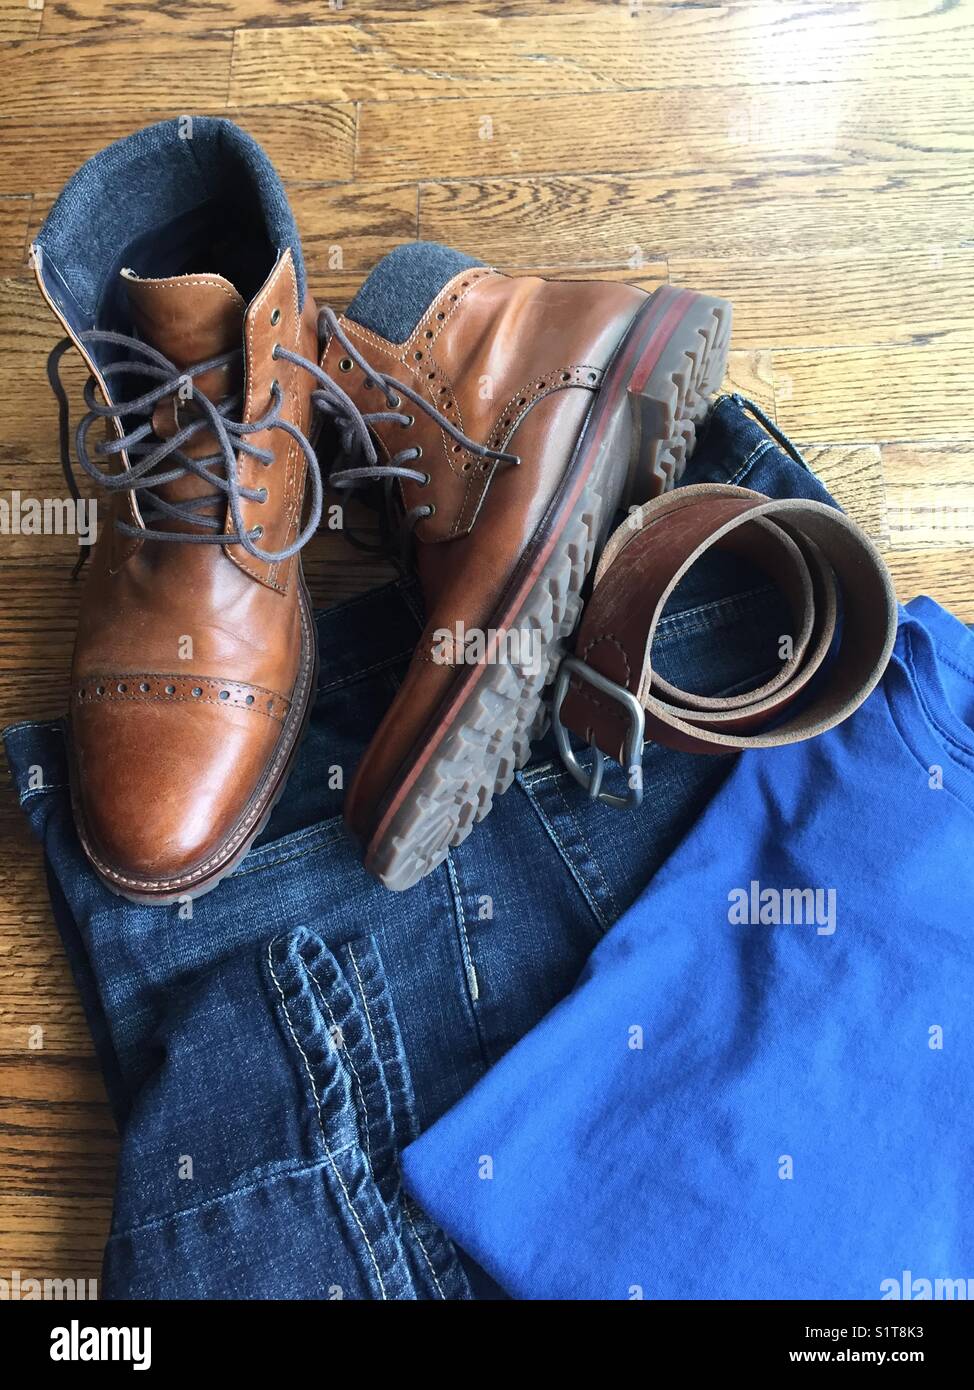 Herren Jeans stiefel Gürtel und blauen Teeshirt Stockfotografie - Alamy